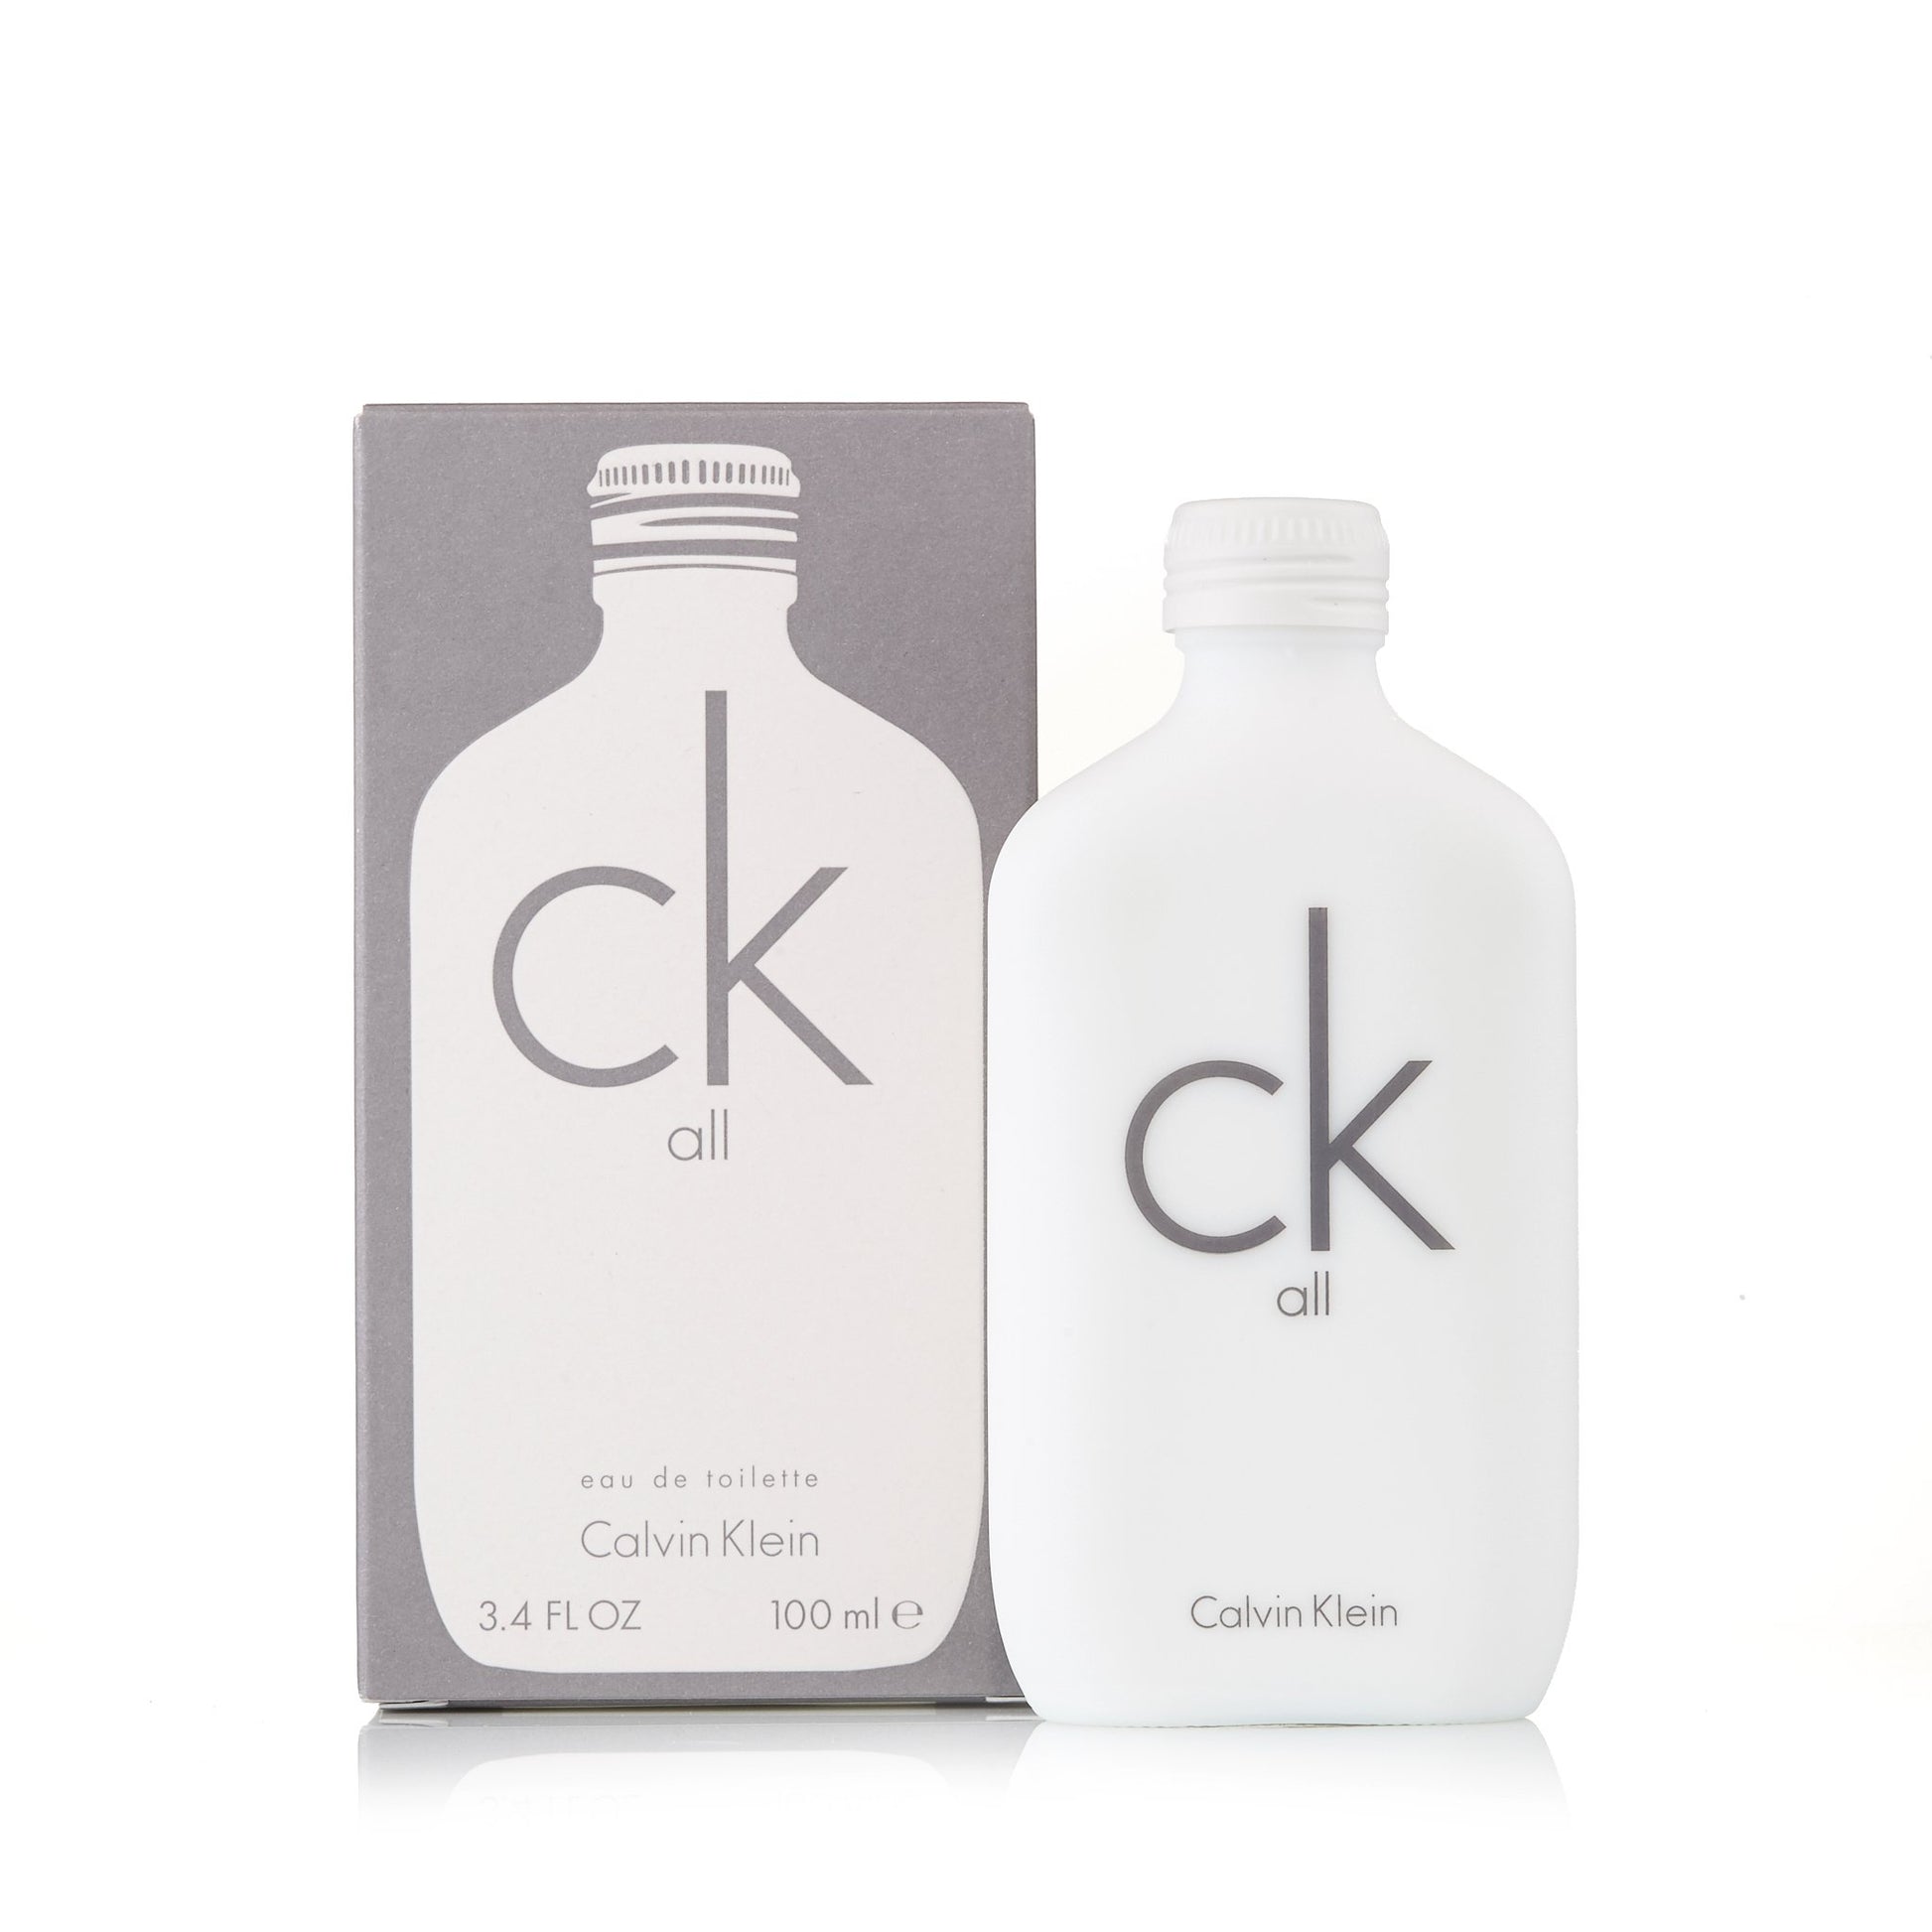 CK All Eau de Toilette Spray for Women and Men by Calvin Klein 3.4 oz. Click to open in modal